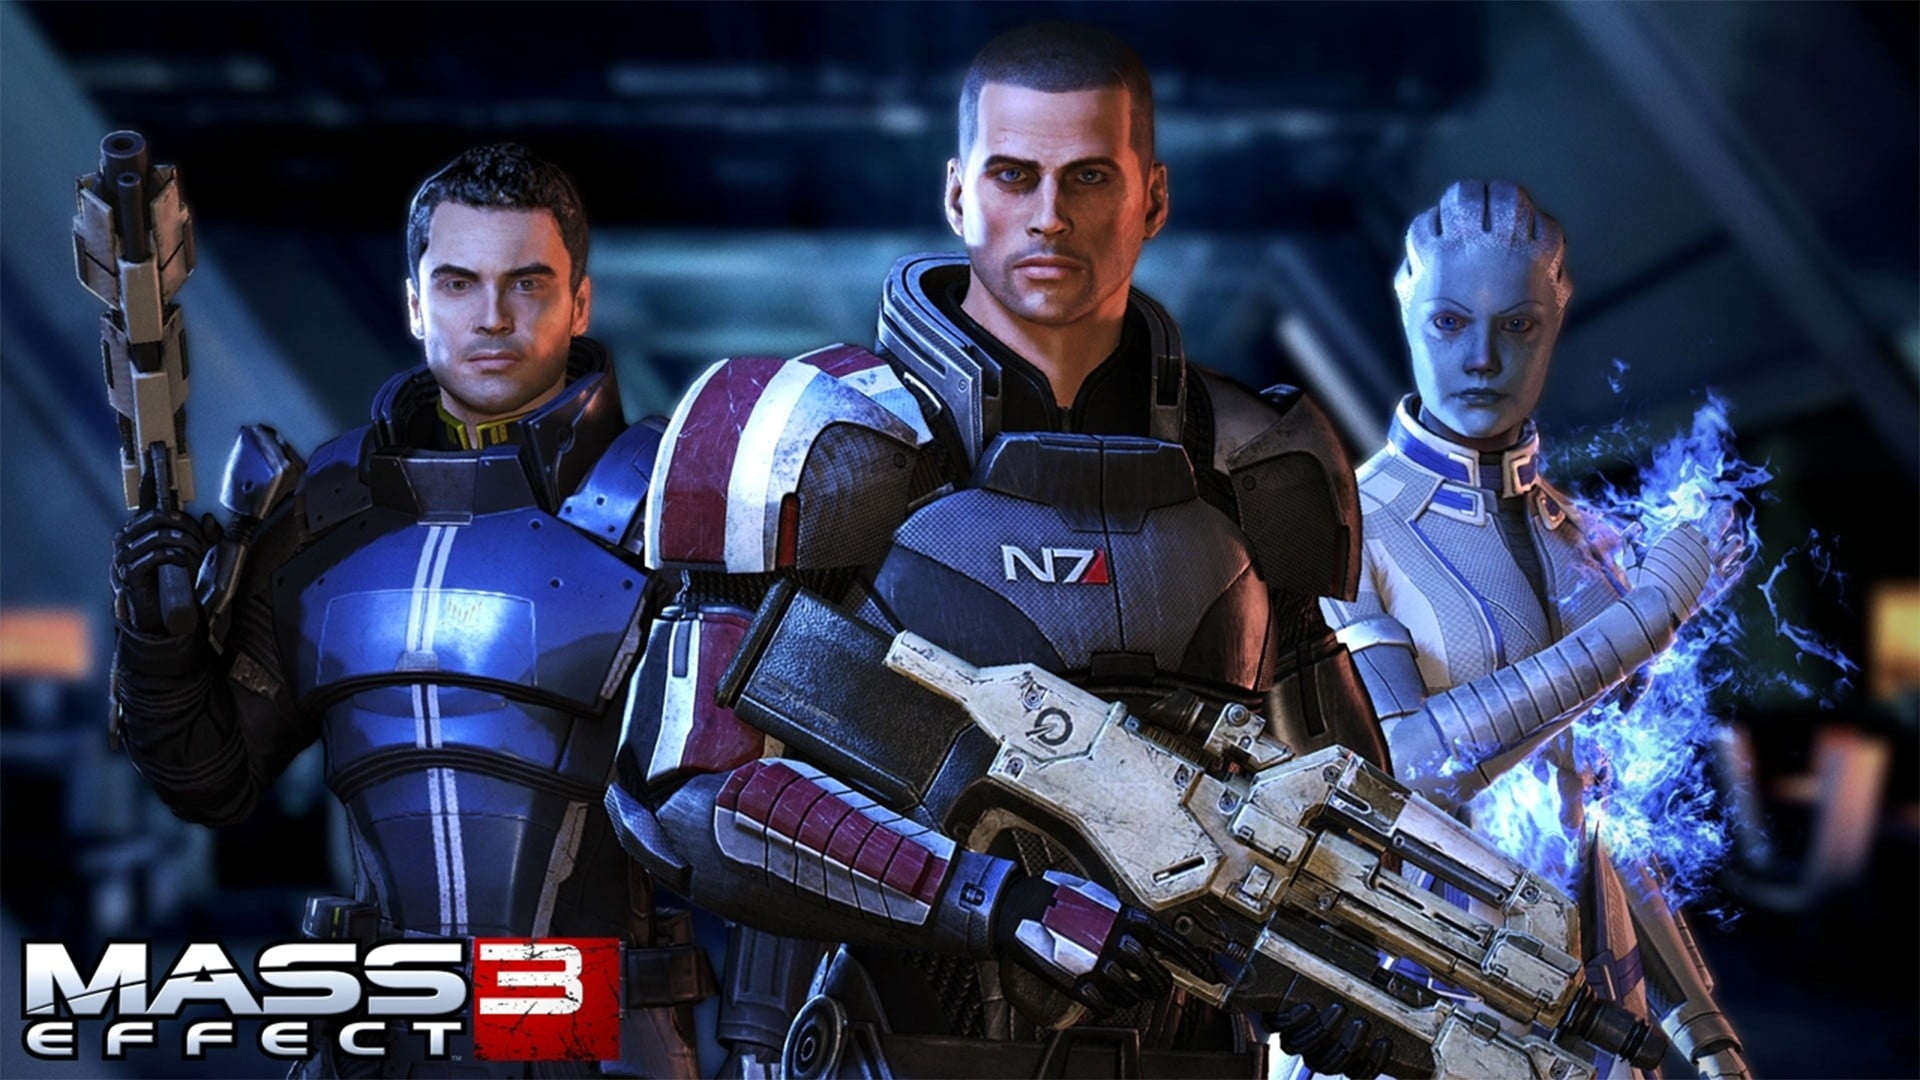 Mass Effect 3, Digital wallpapers, High definition, Sci-fi game, 1920x1080 Full HD Desktop